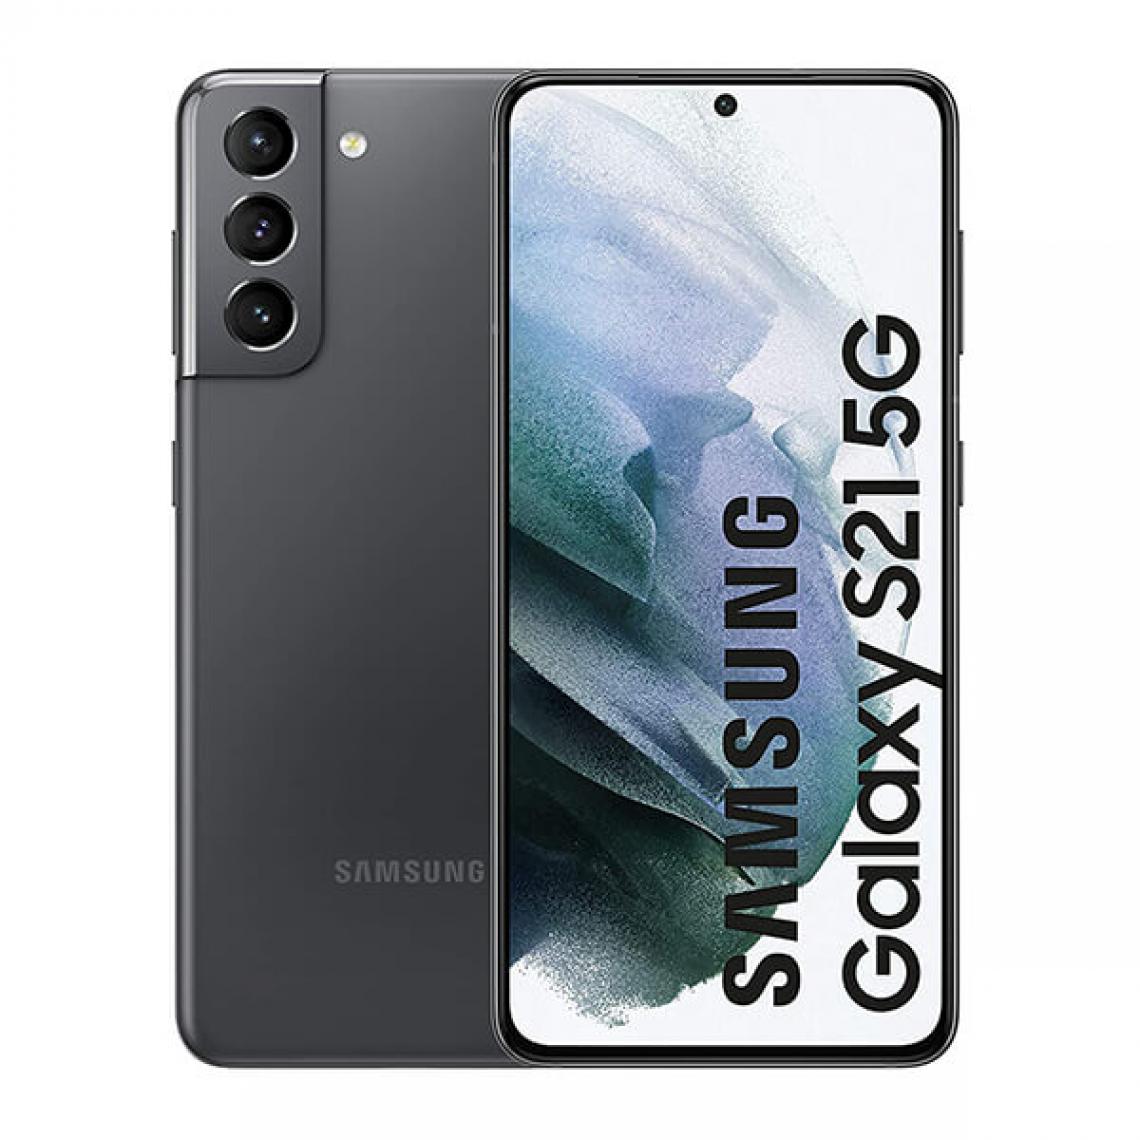 Samsung - Samsung Galaxy S21 5G 8Go/256Go Gris (Phantom Gray) Dual SIM G991 - Smartphone Android